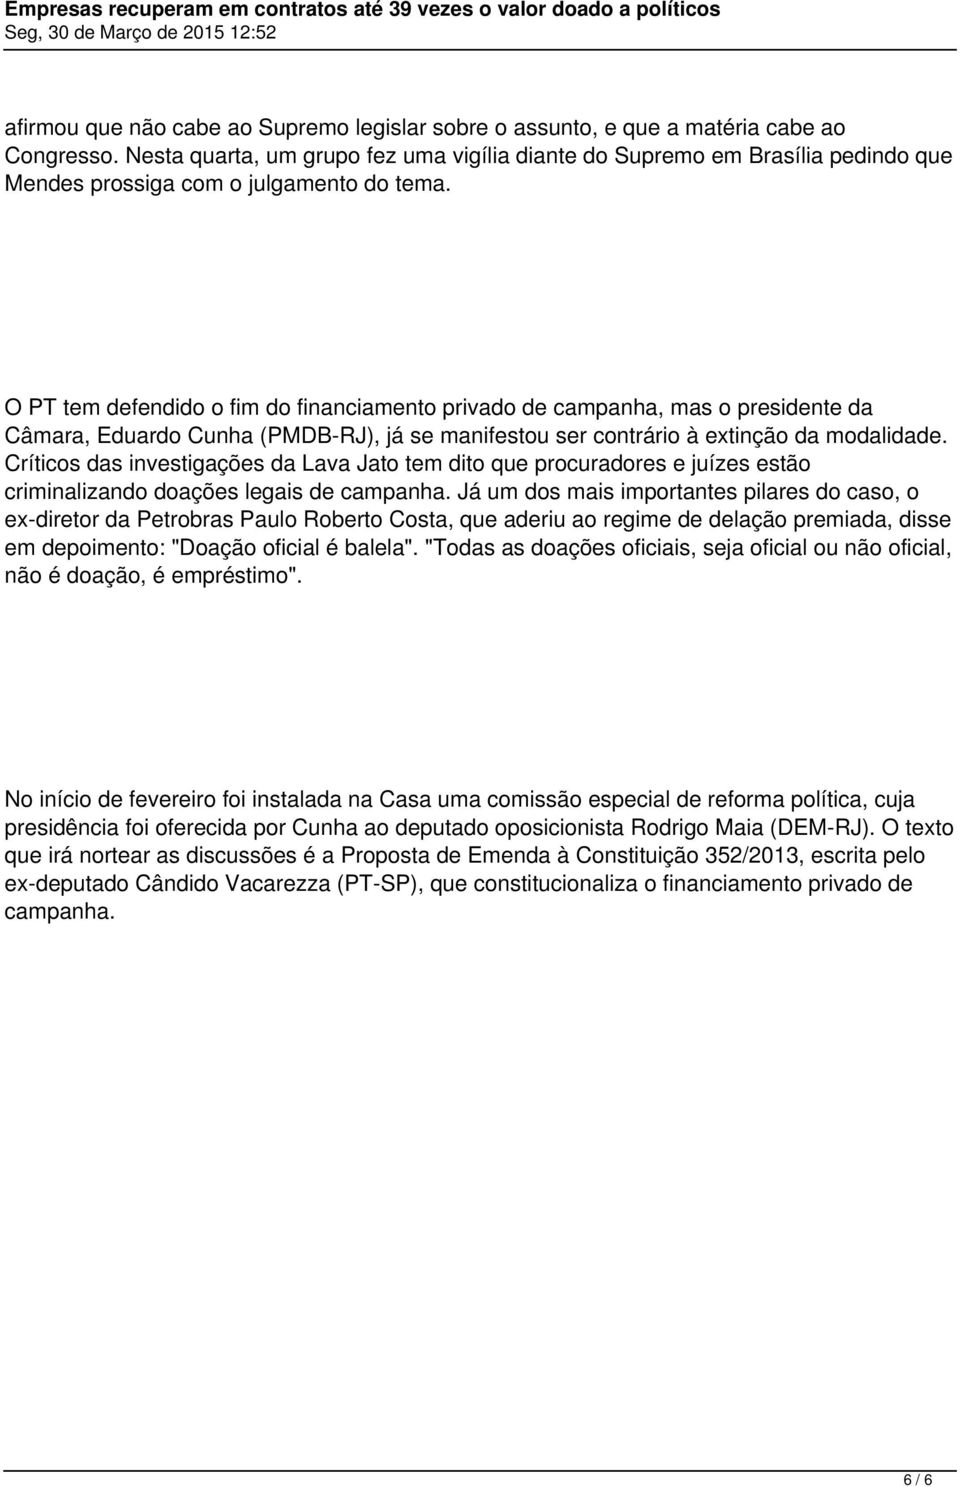 O PT tem defendido o fim do financiamento privado de campanha, mas o presidente da Câmara, Eduardo Cunha (PMDB-RJ), já se manifestou ser contrário à extinção da modalidade.